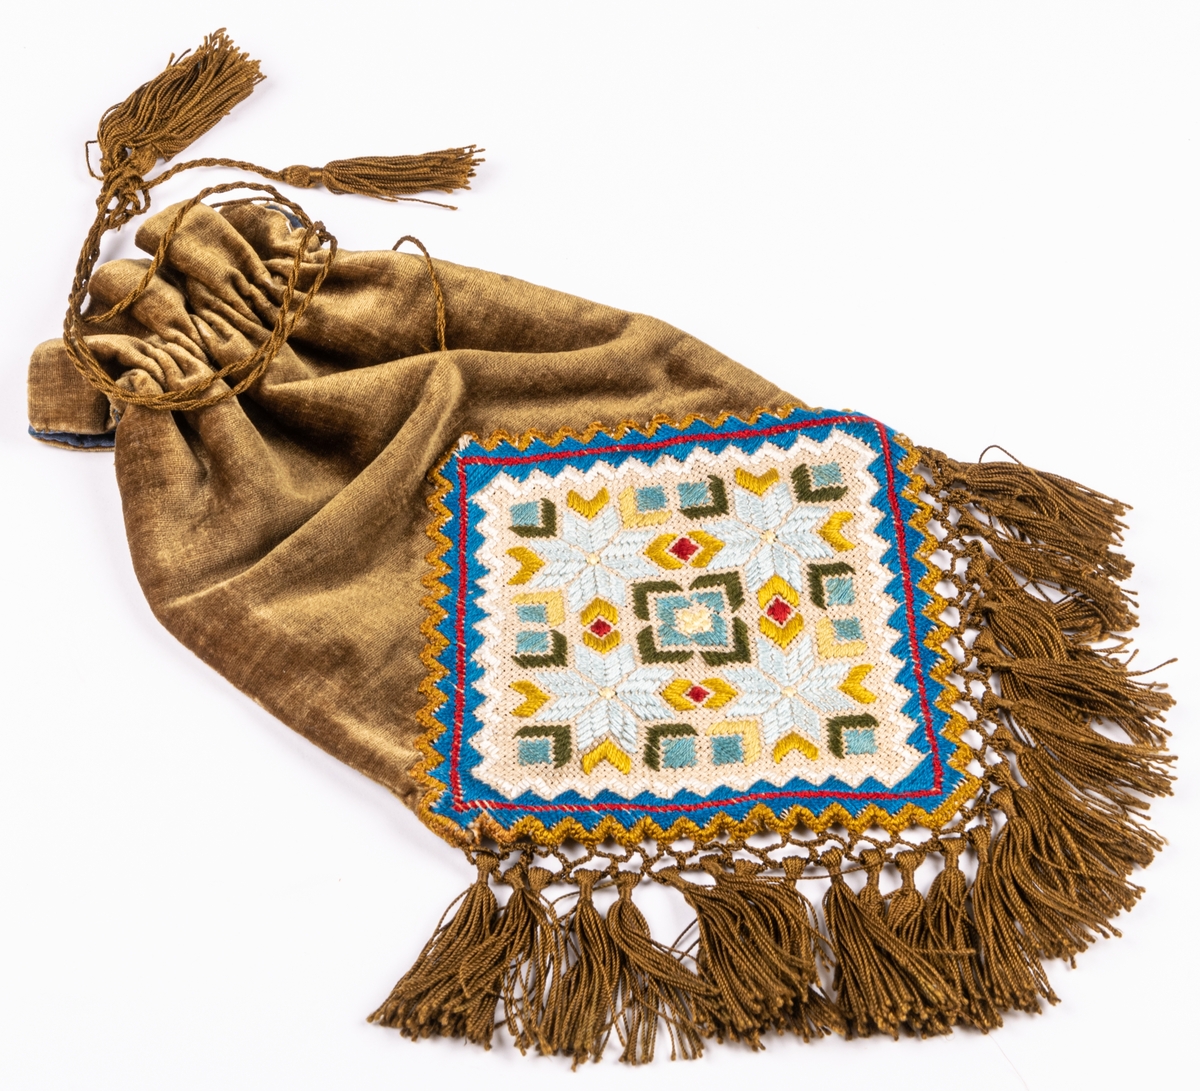 Väska av mossgrönt sammet, påsmodell, frans av bronsfärgat silke och broderi på stramalj.
Från början av 1900-talet.